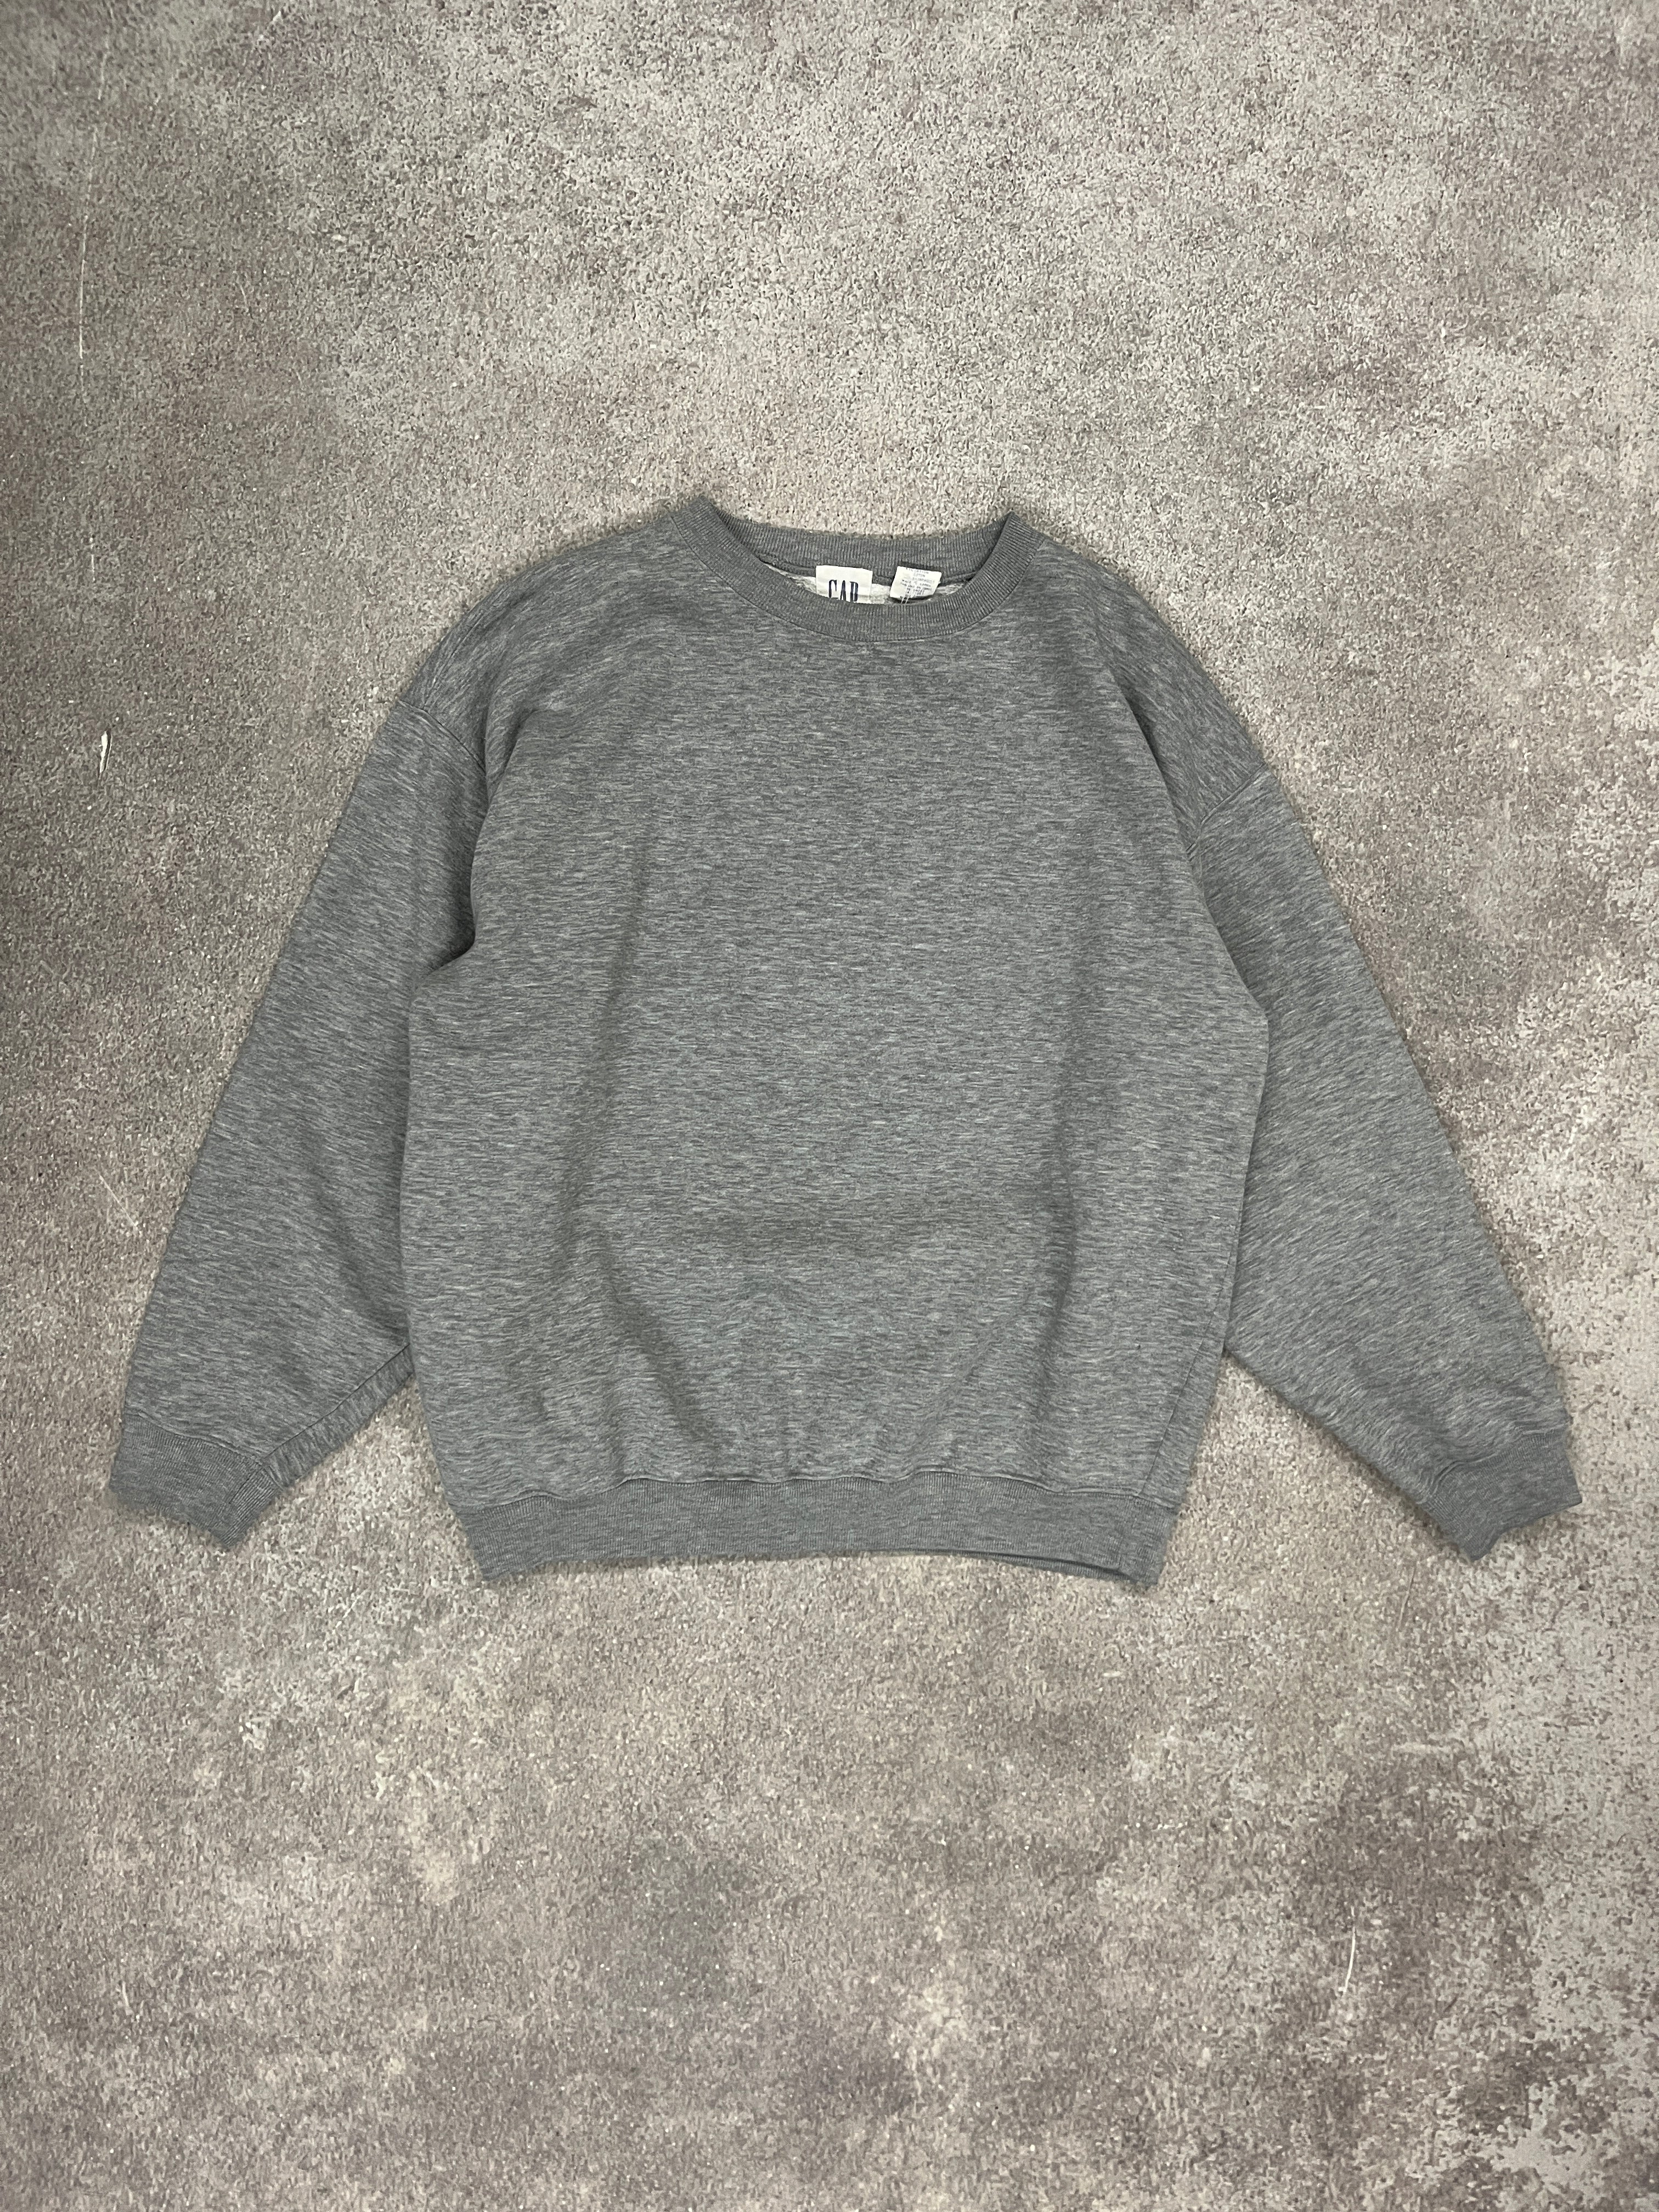 Vintage GAP Blank Sweater Grey // Medium - RHAGHOUSE VINTAGE